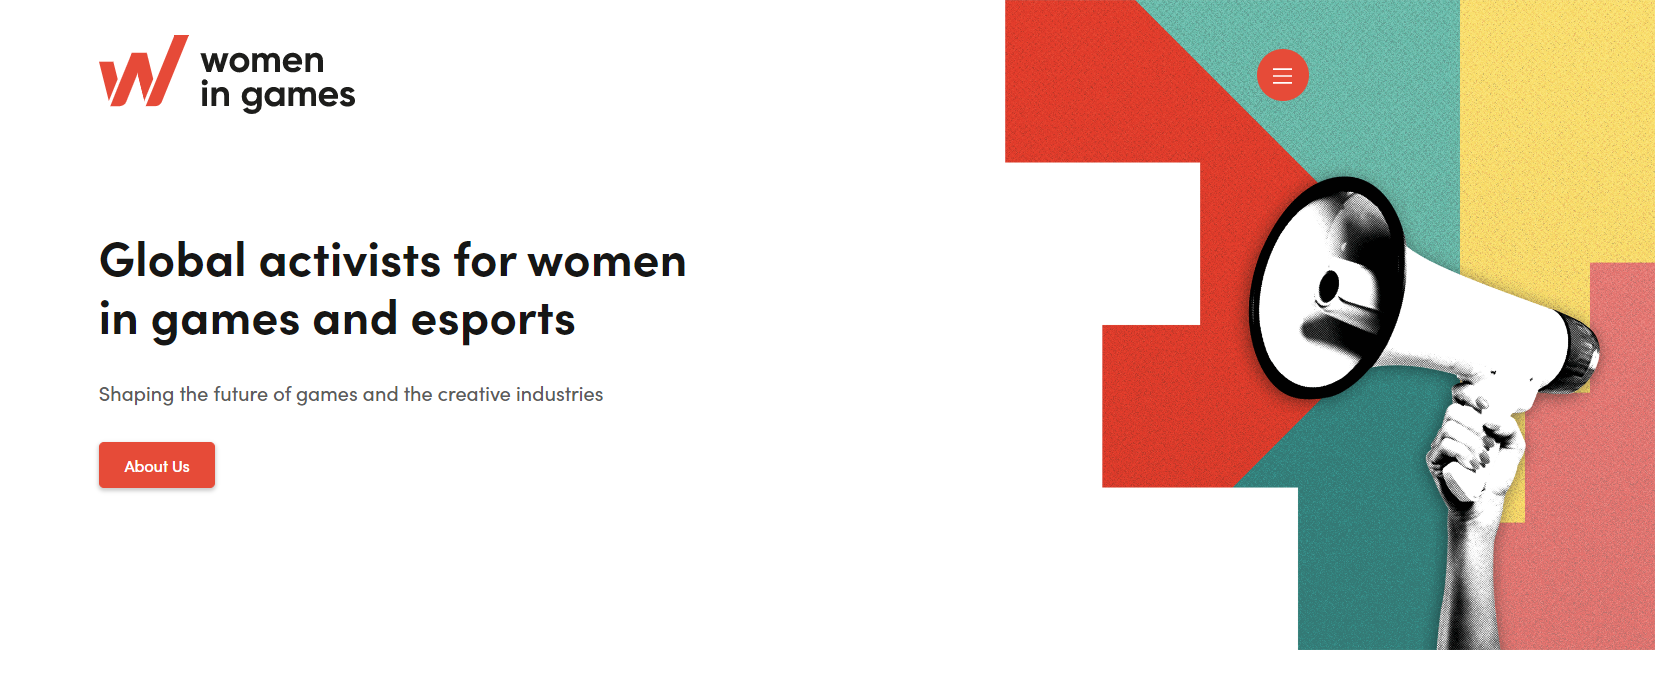 女性游戏组织Women in Games表示游戏行业正在倒退